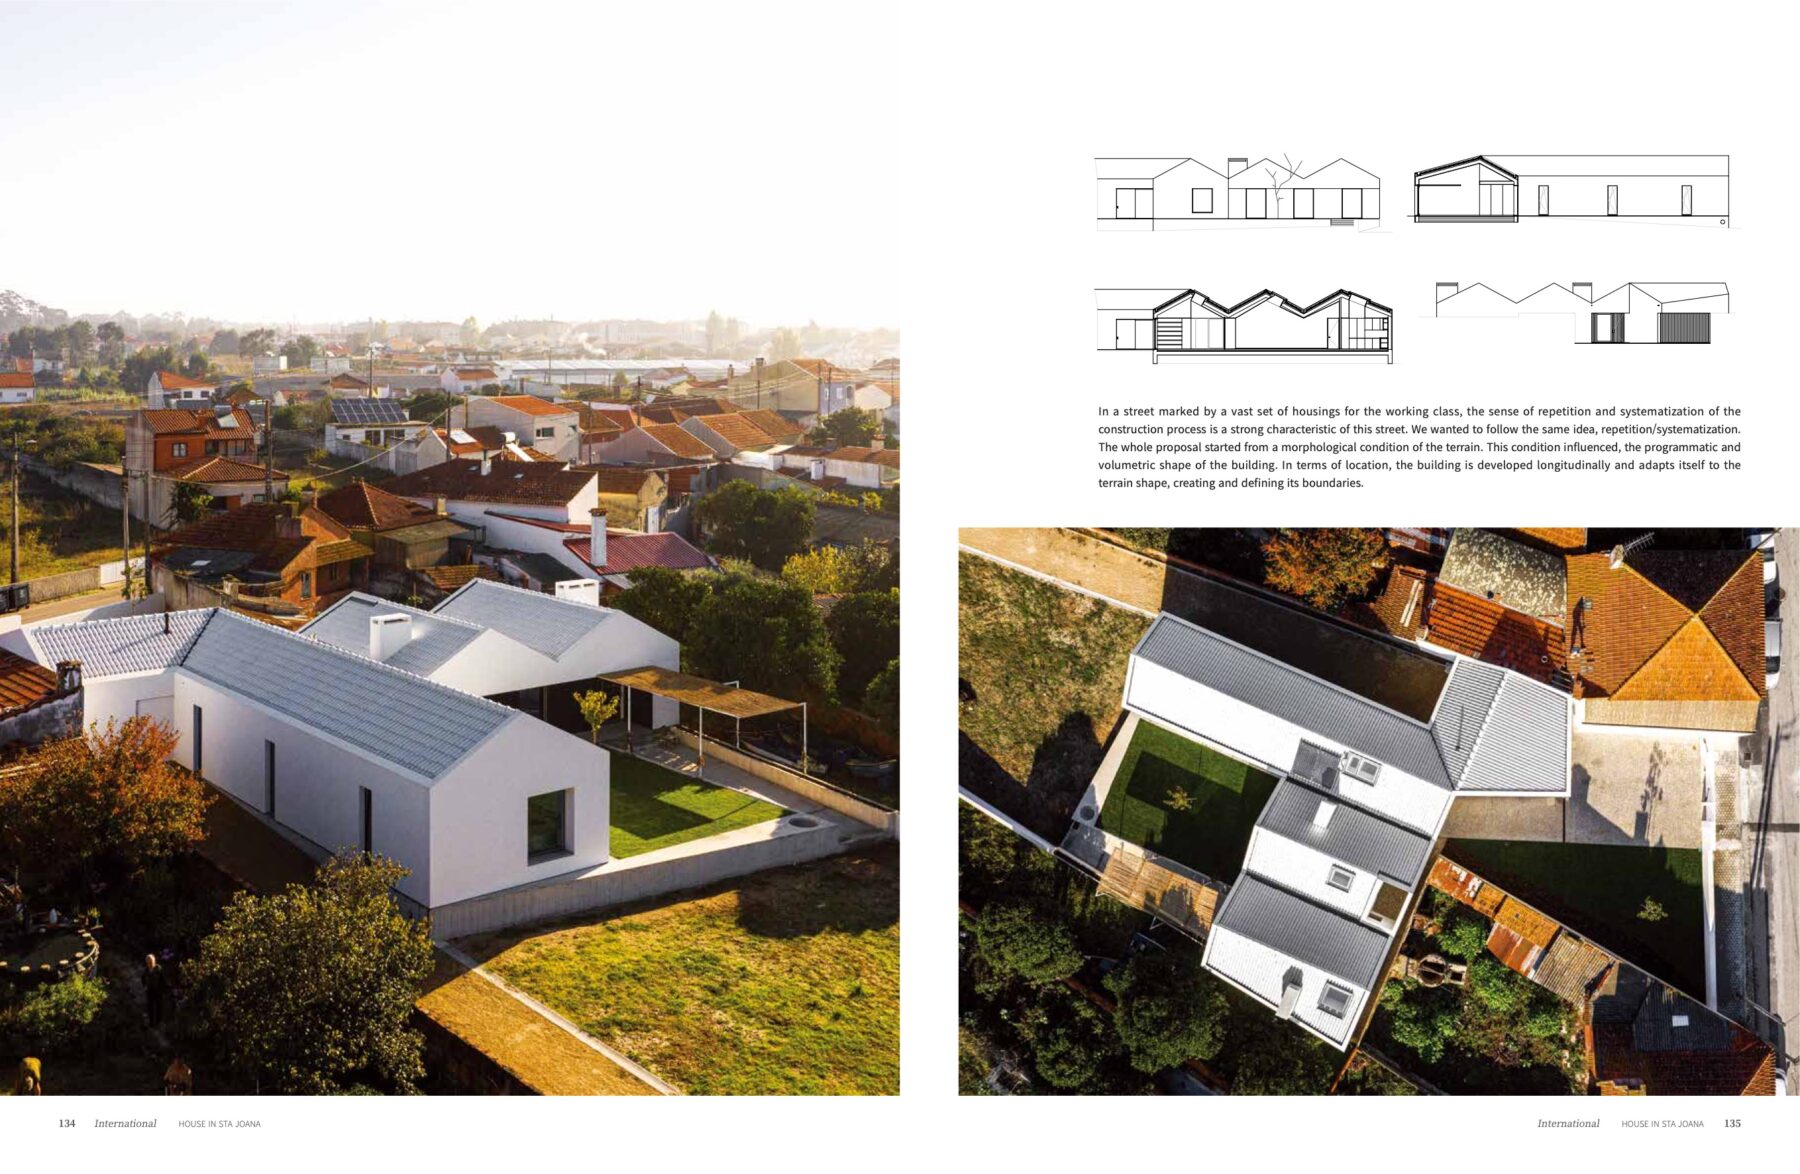 Deco Journal #321 do atelier Nu.ma com fotografia arquitetura de ivo tavares studio - architectural photography